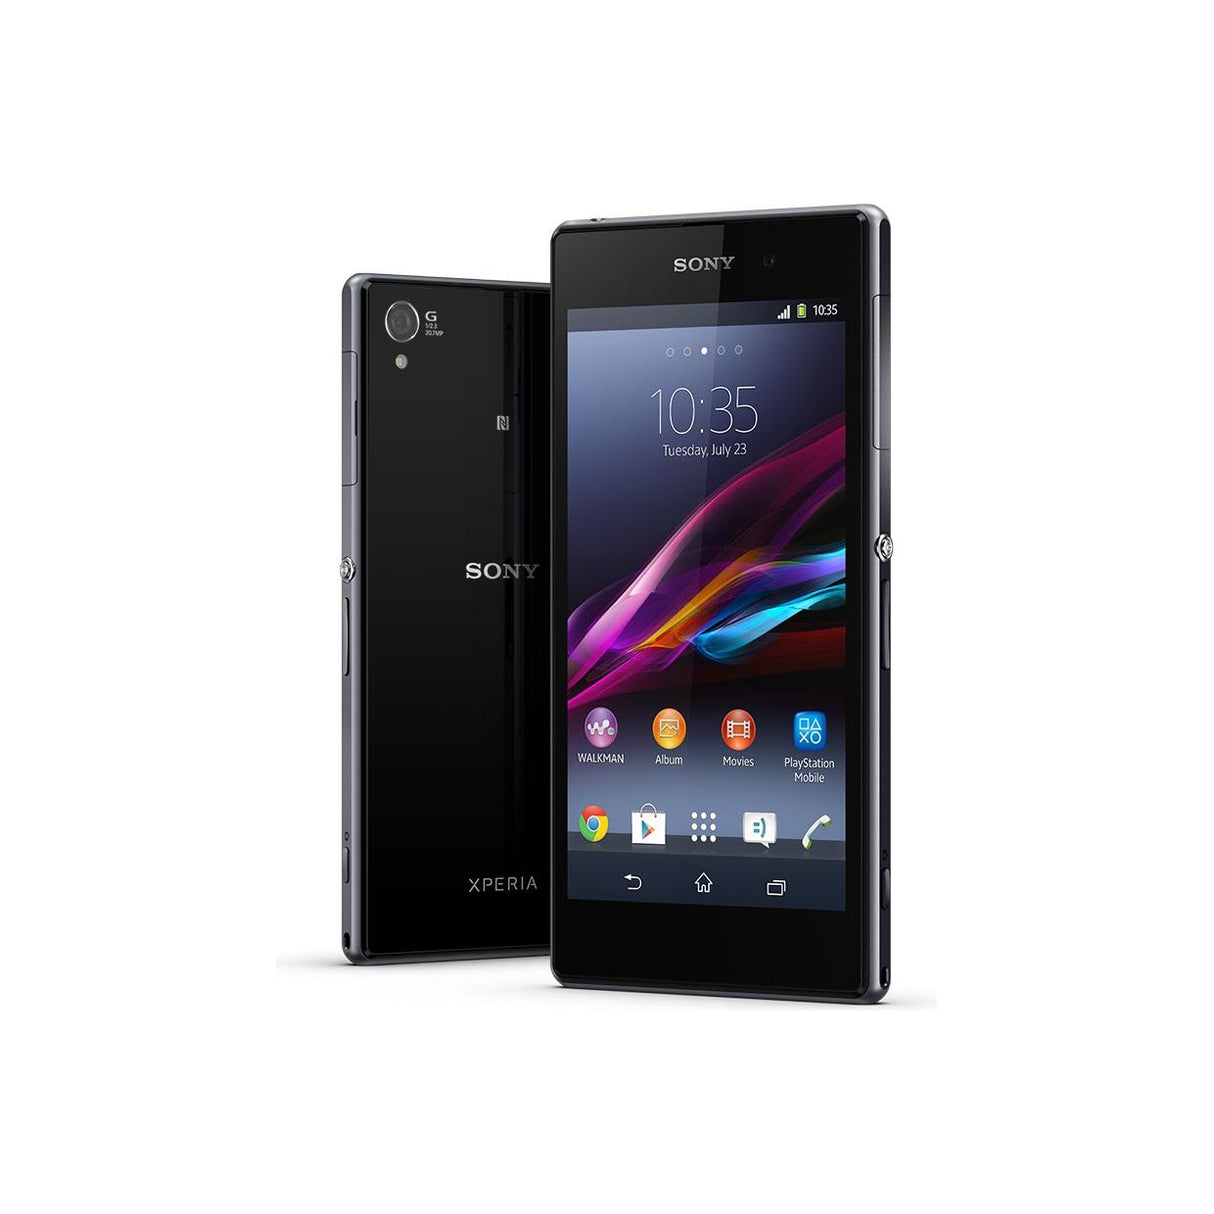 Sony Xperia Z1 C6903 Unlocked 16GB GSM Smartphone - Black - New